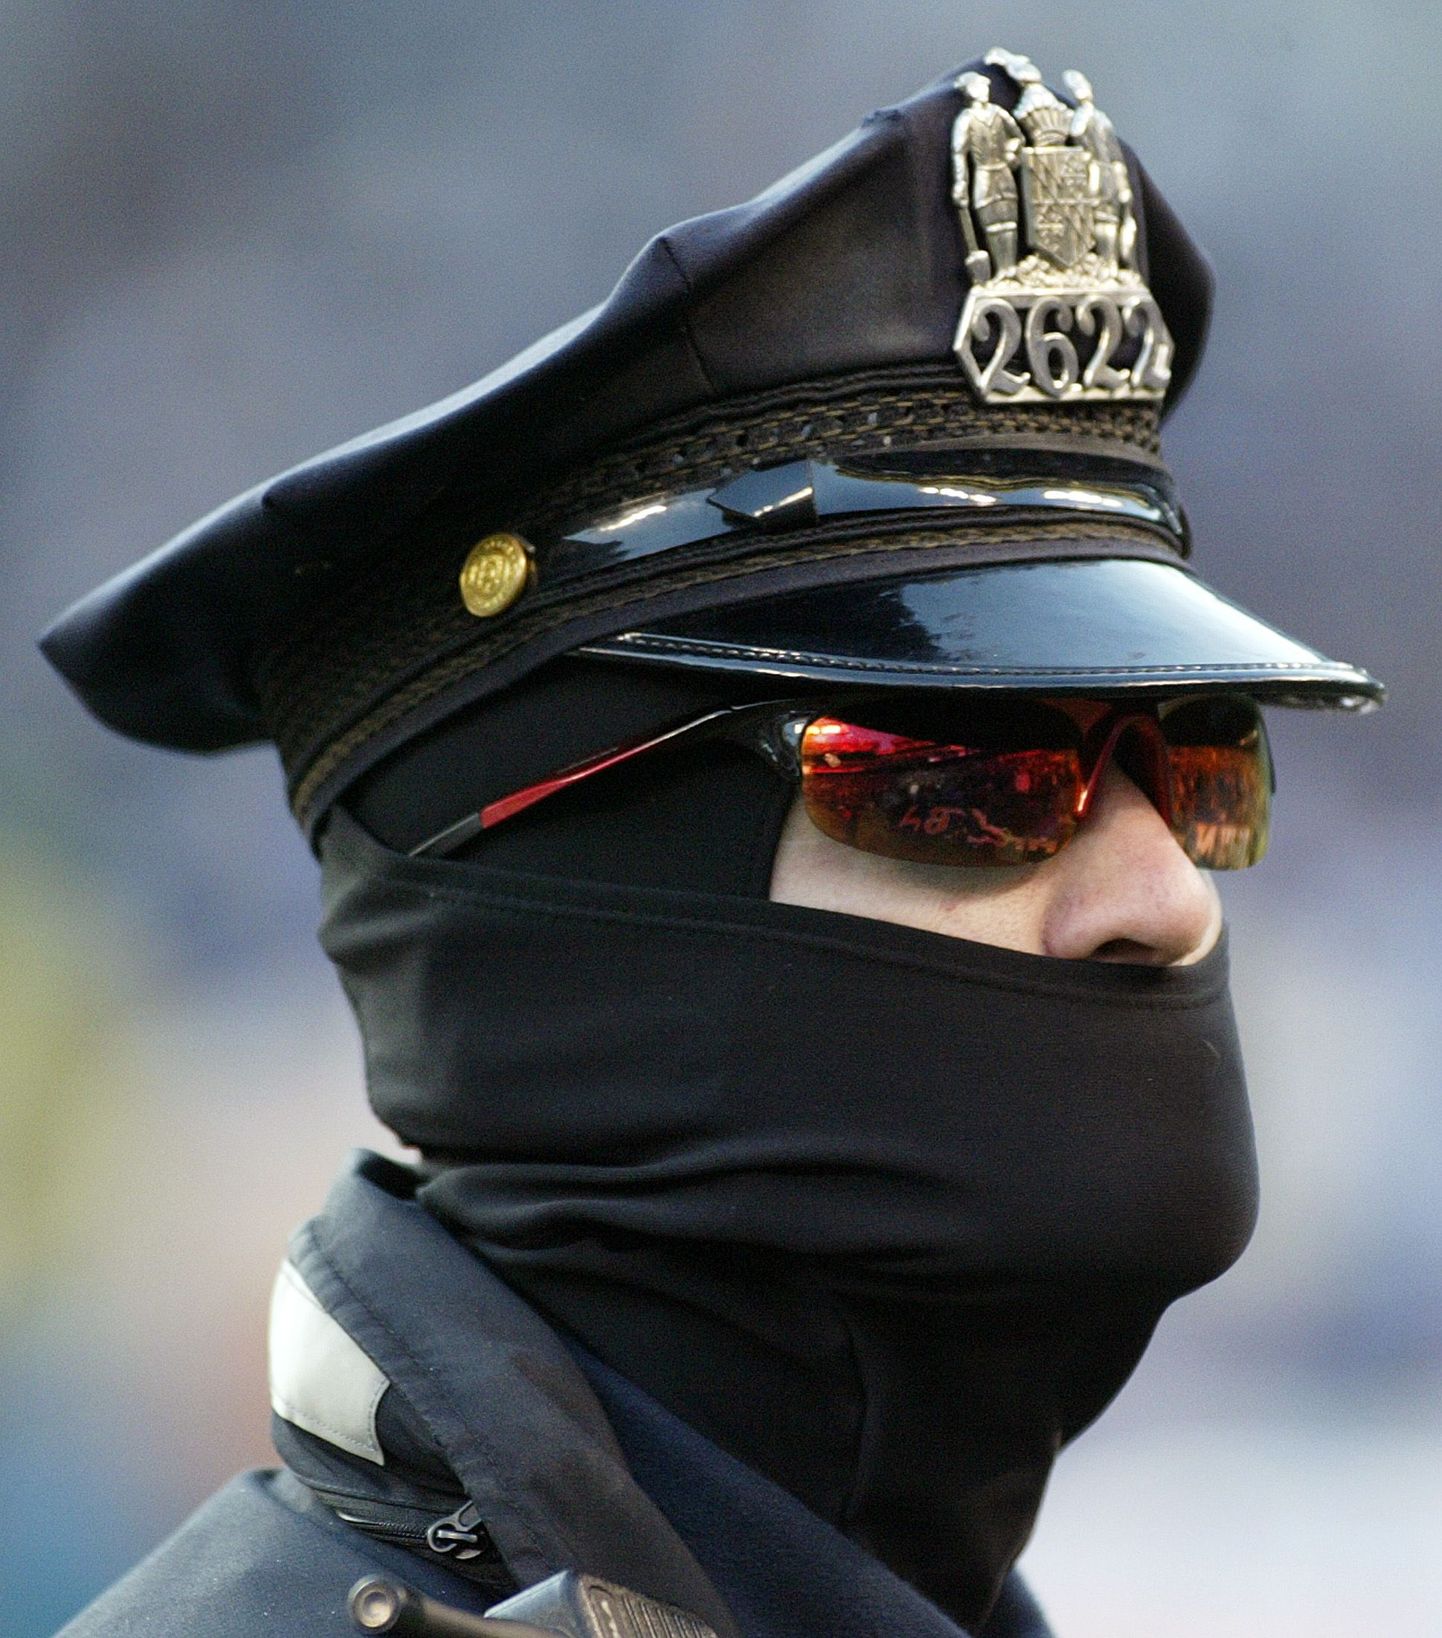 Baltimore'i politsenik.